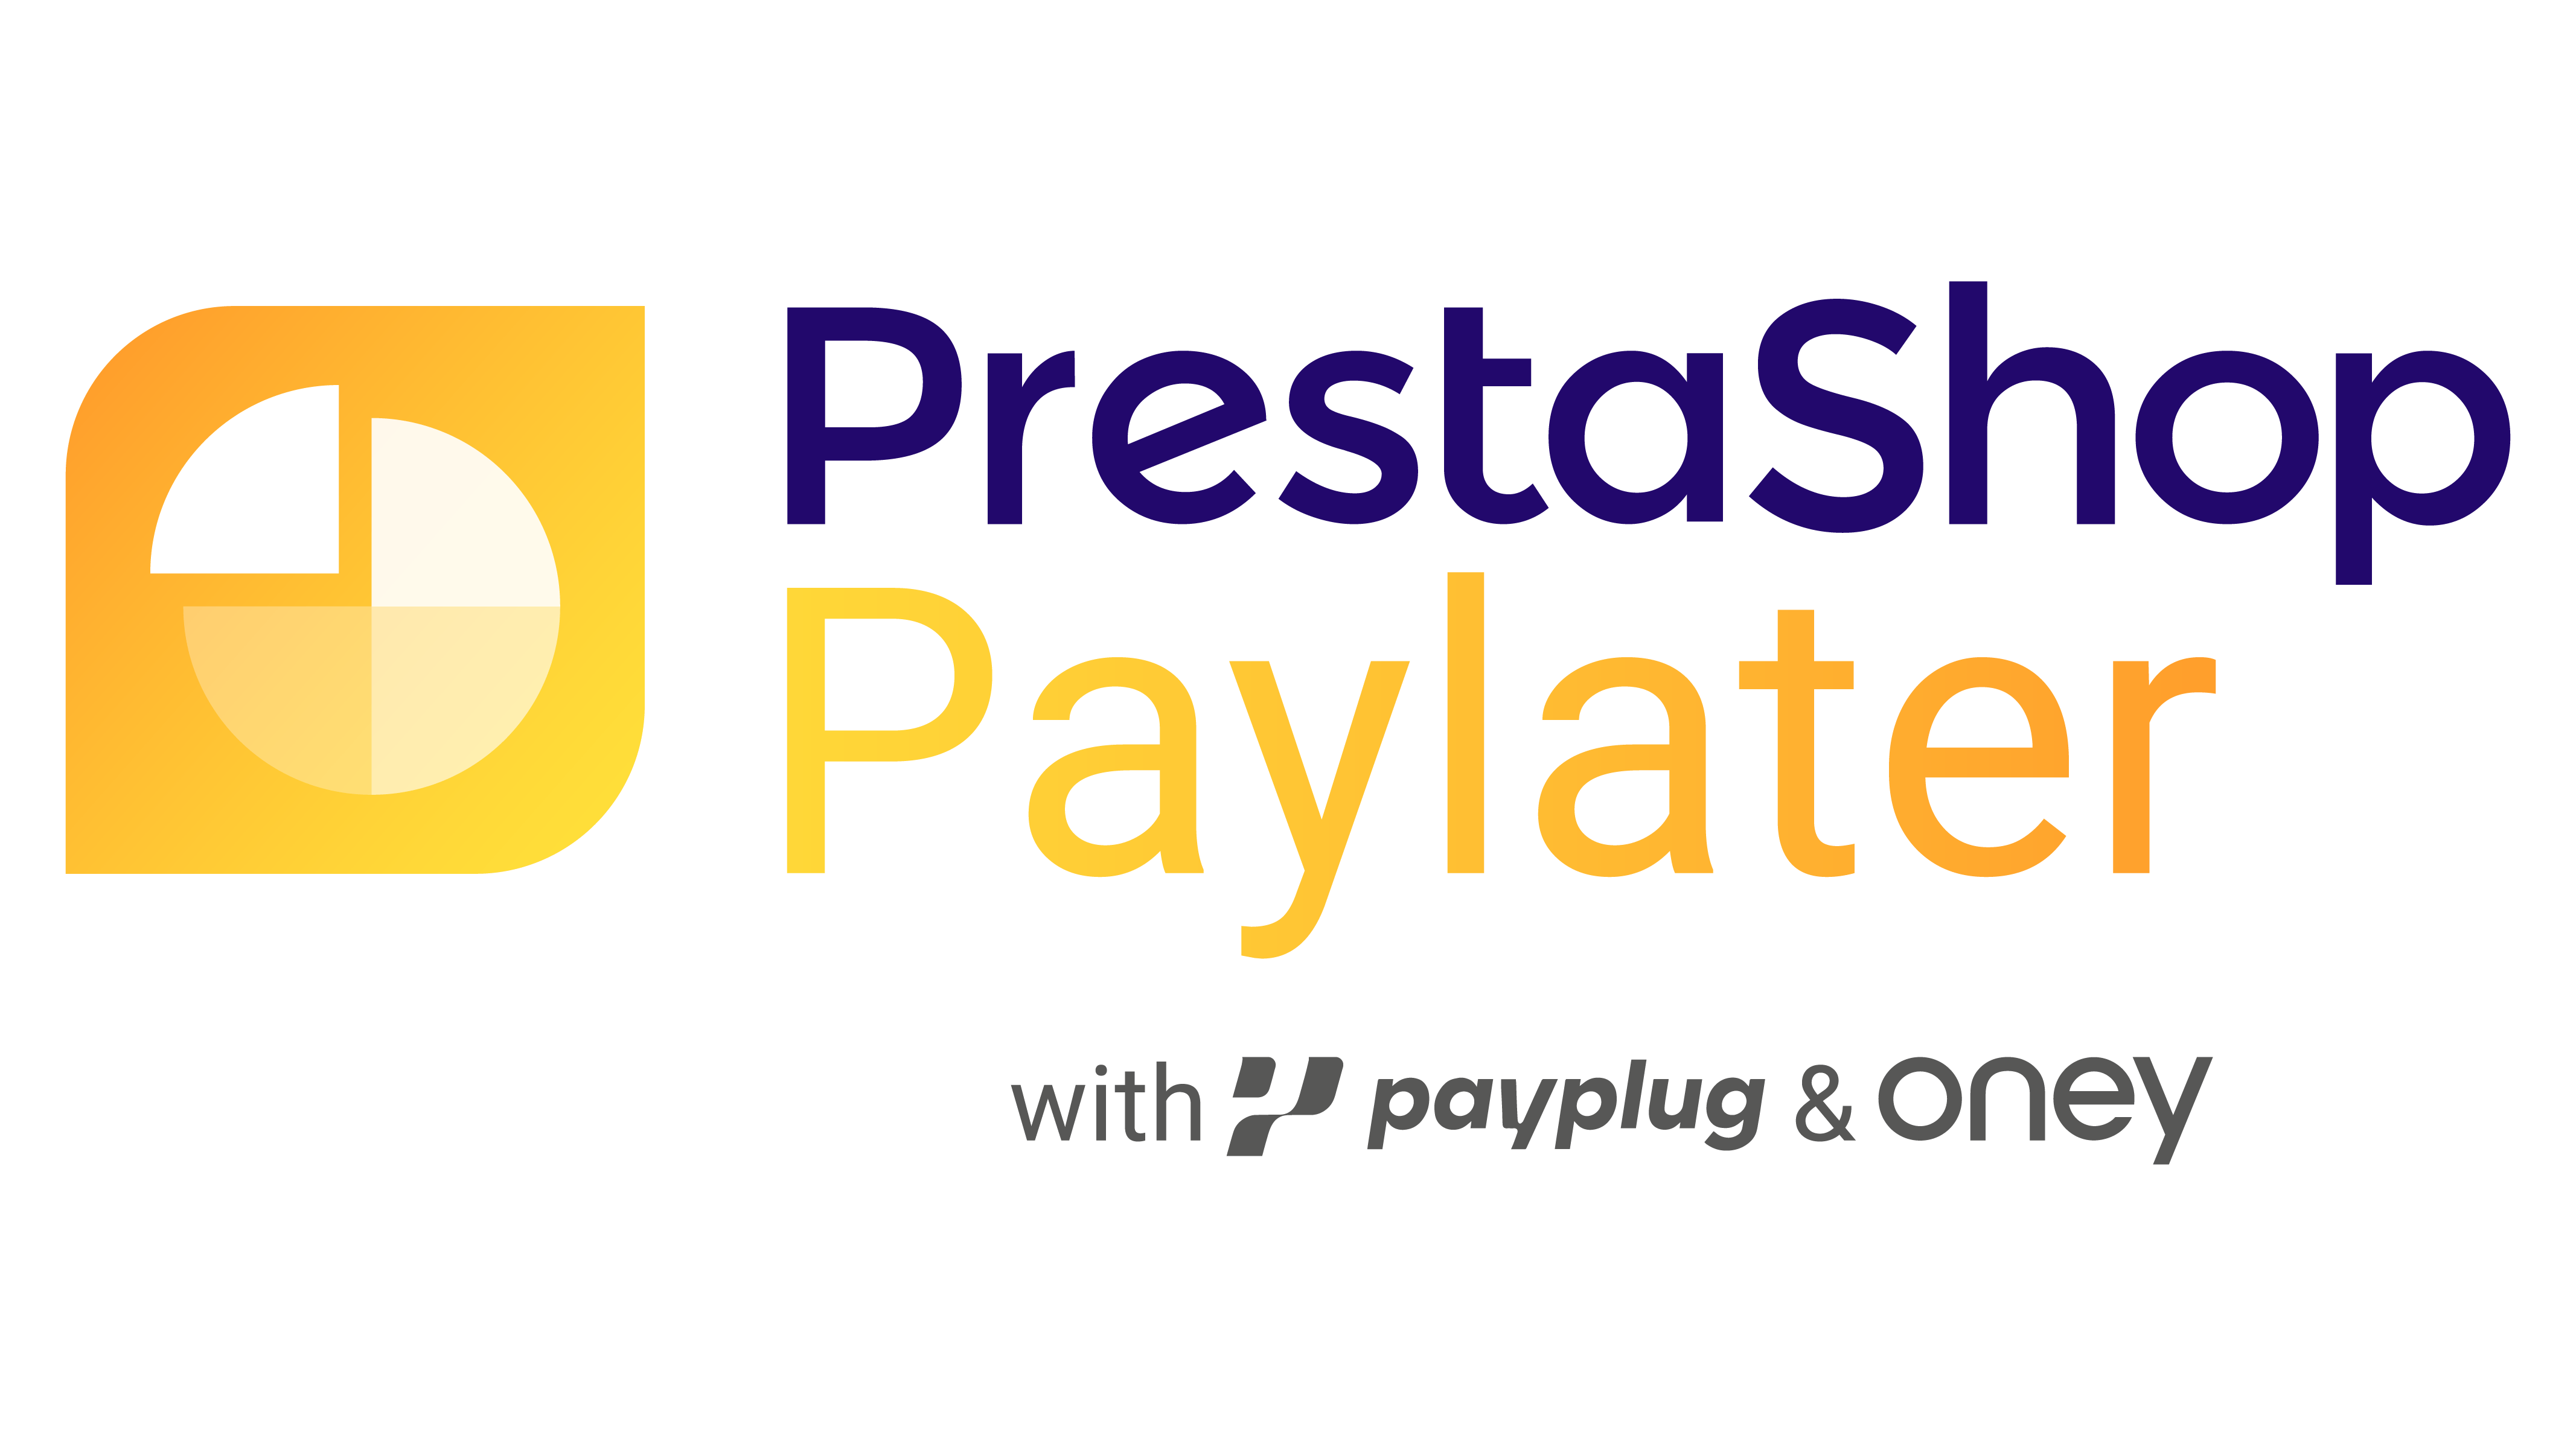 PrestaShop Paylater